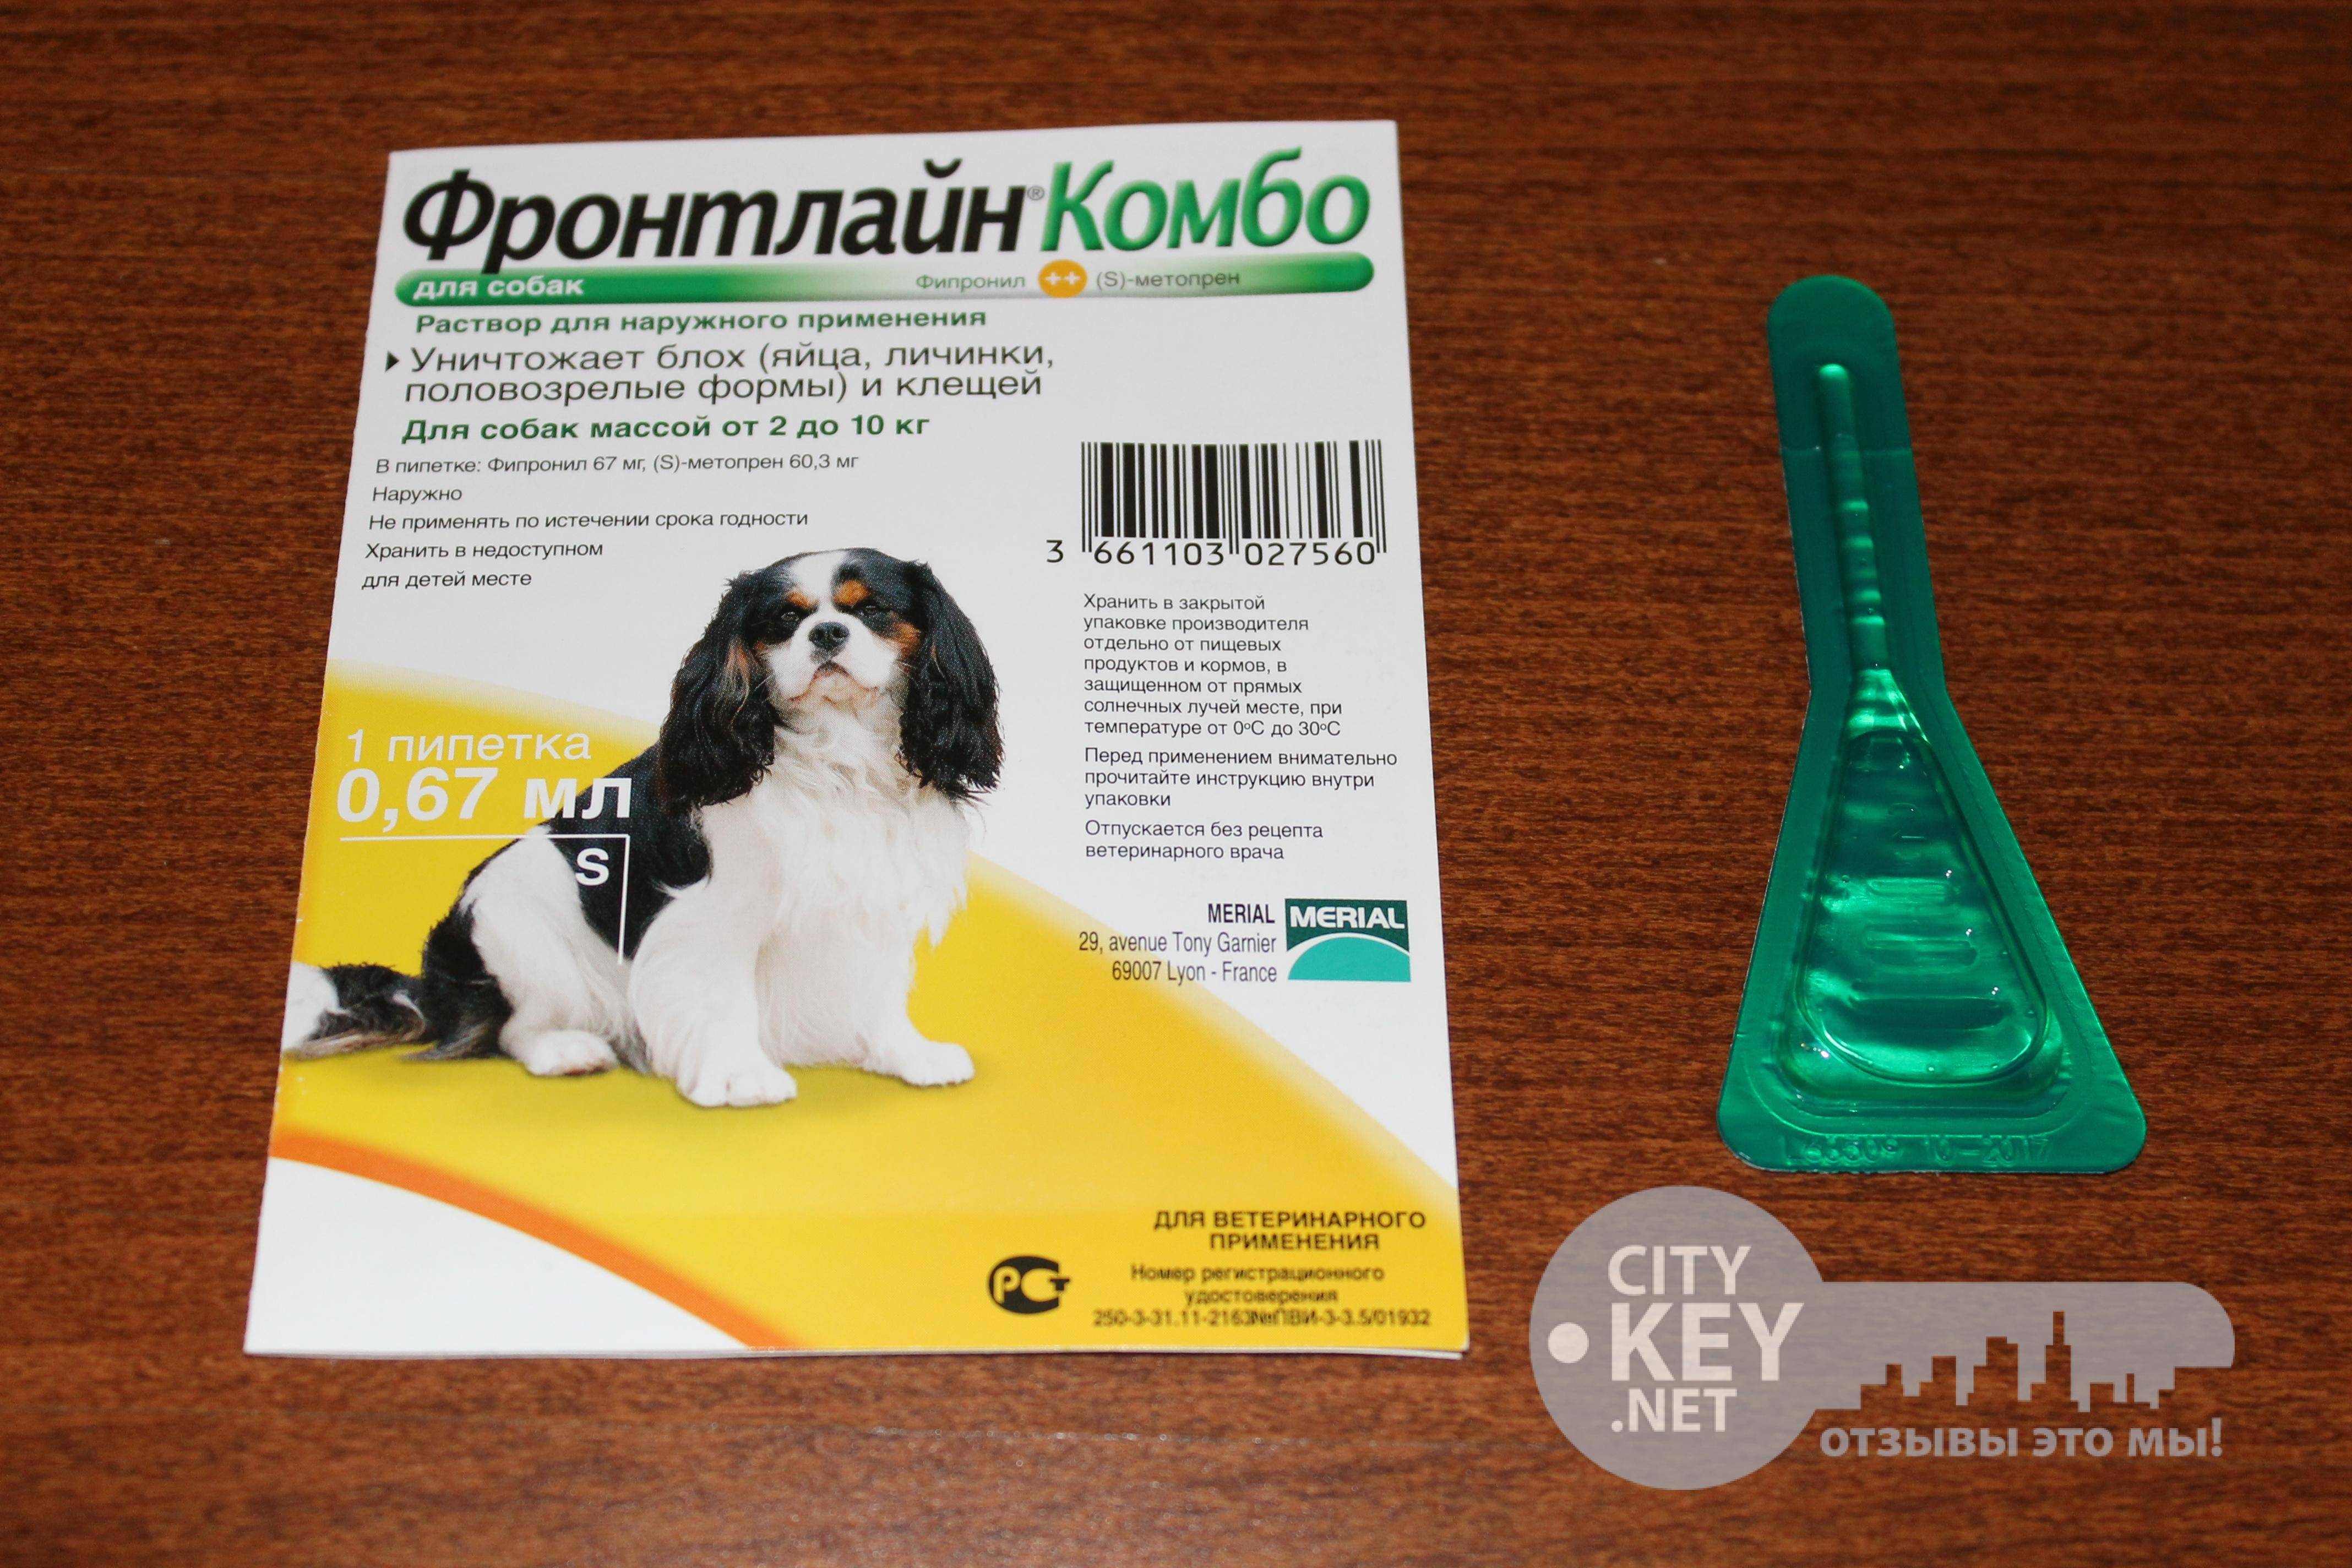 Таблетки от клещей для собак: обзор, применение
таблетки от клещей для собак: обзор, применение